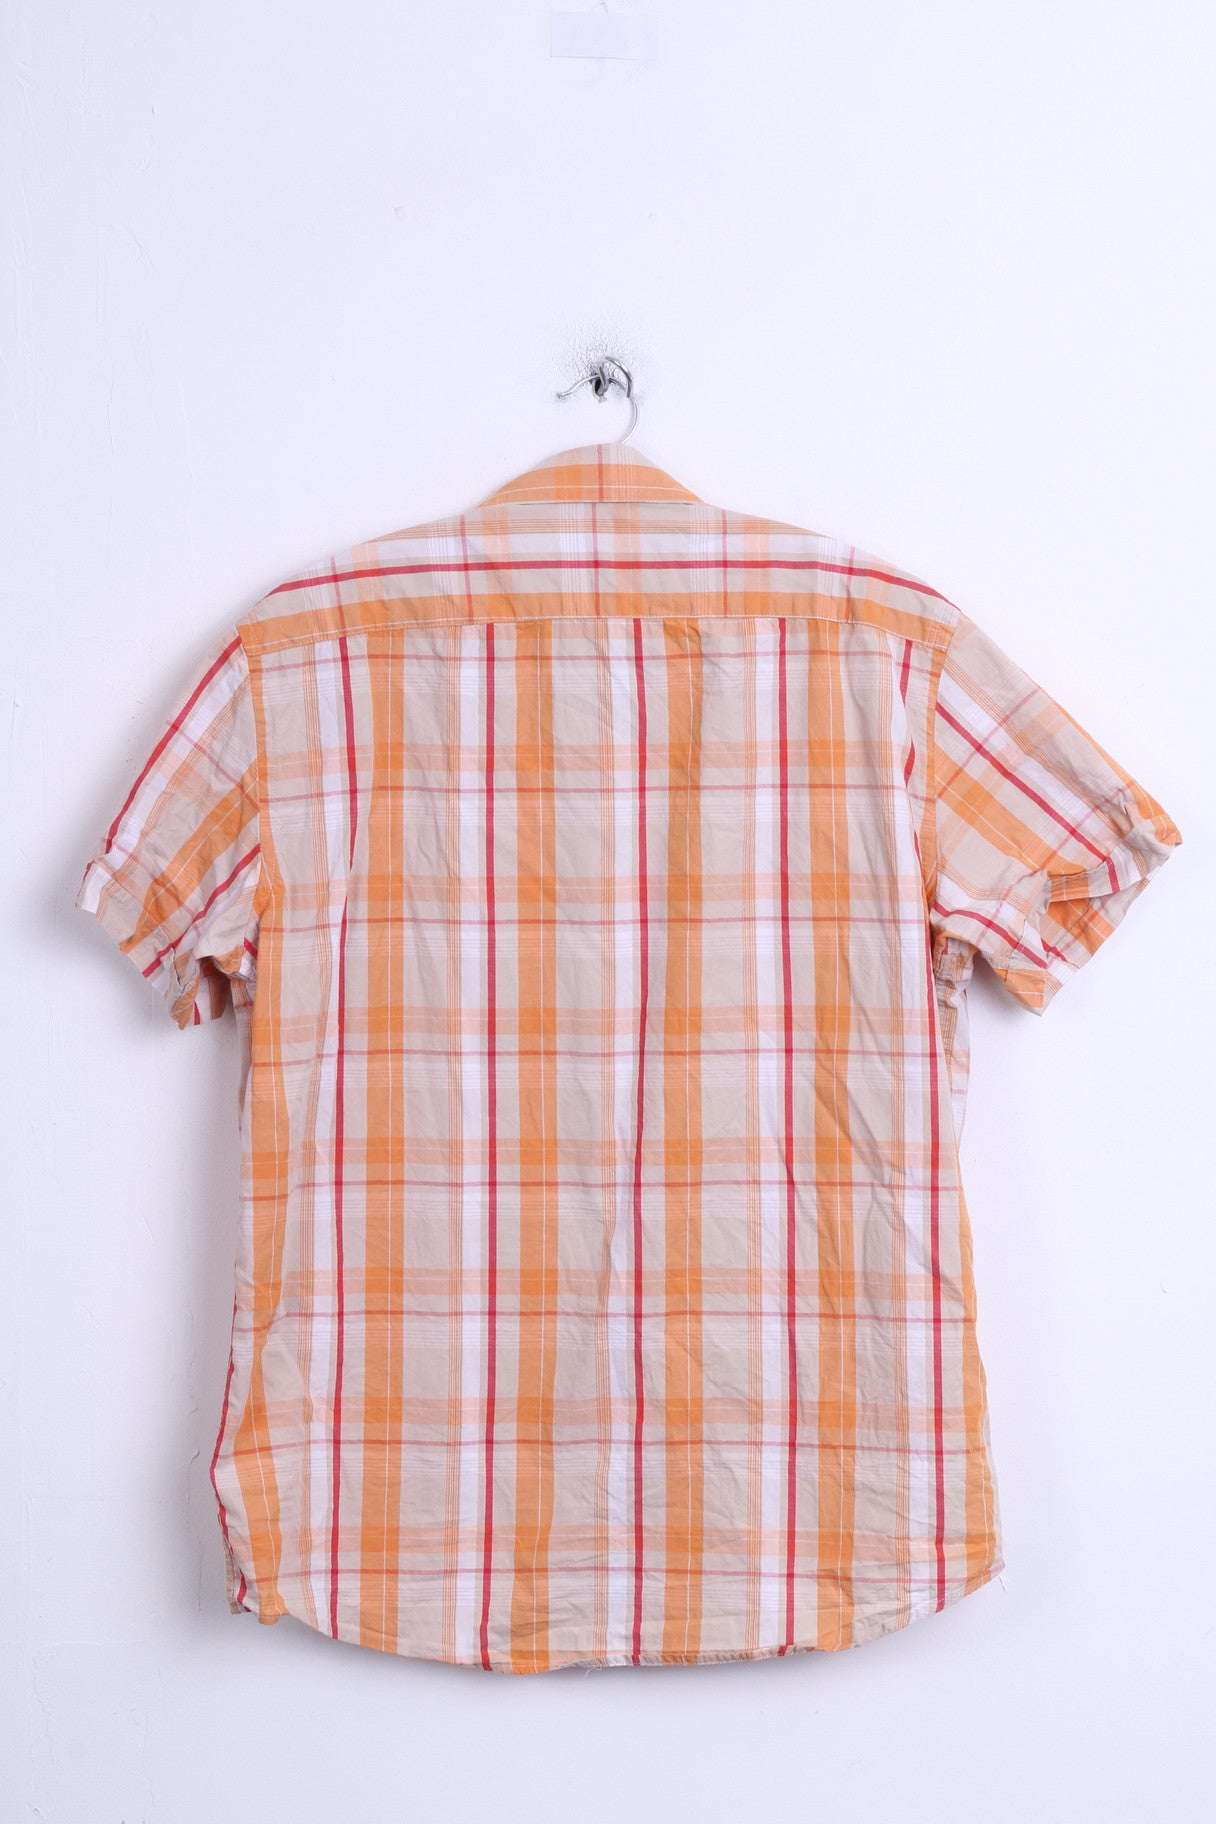 Fundamentals Mens L Casual Shirt Check Orange Pure Cotton Top - RetrospectClothes